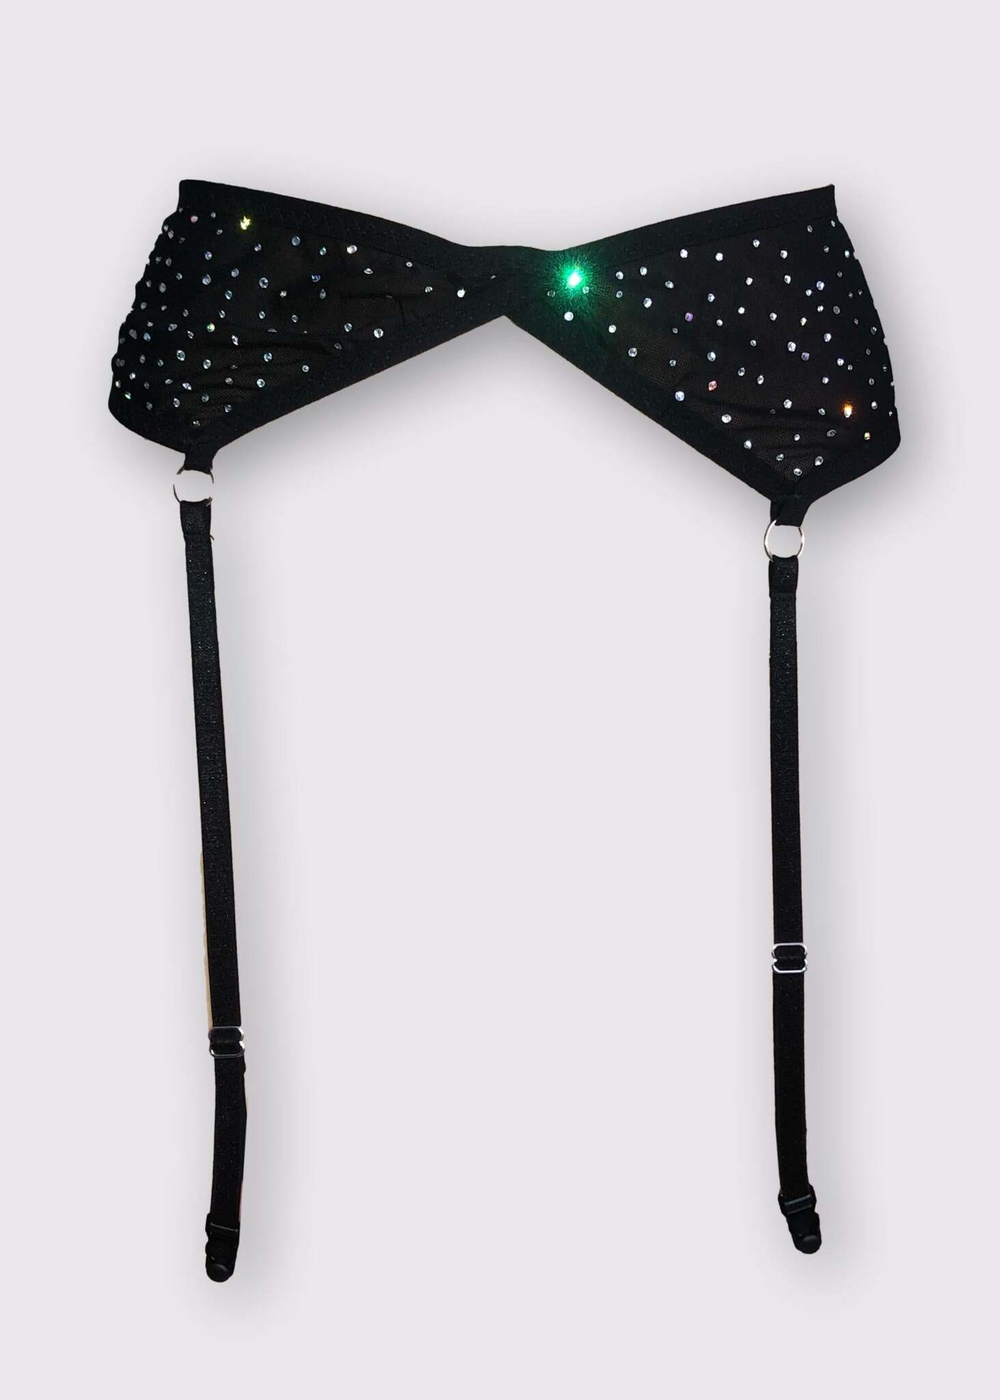 Shiny Sphere belt for stockings